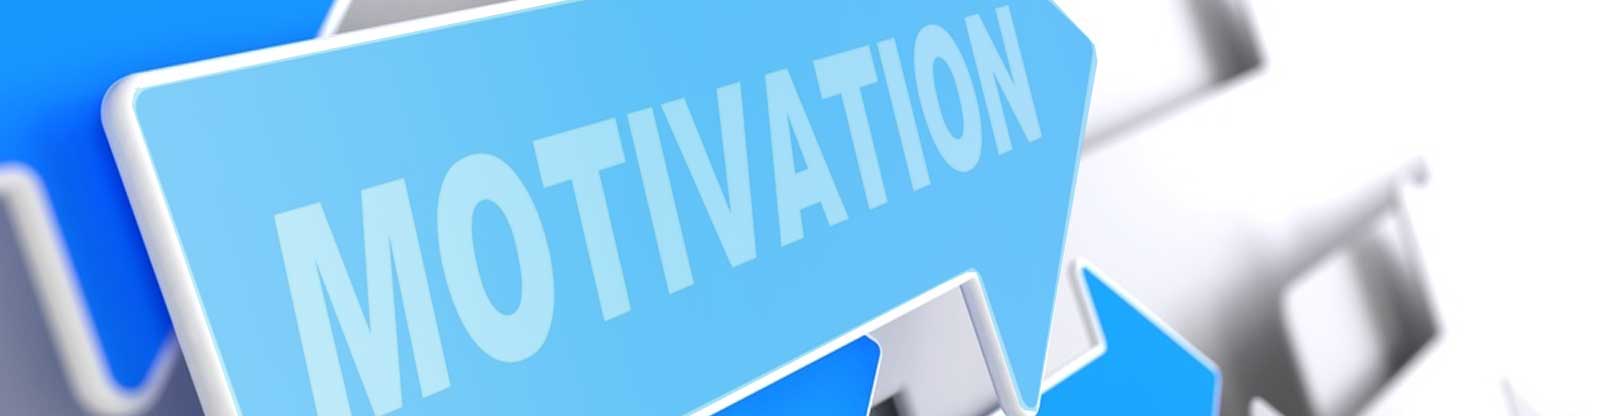 Motivation-recognition